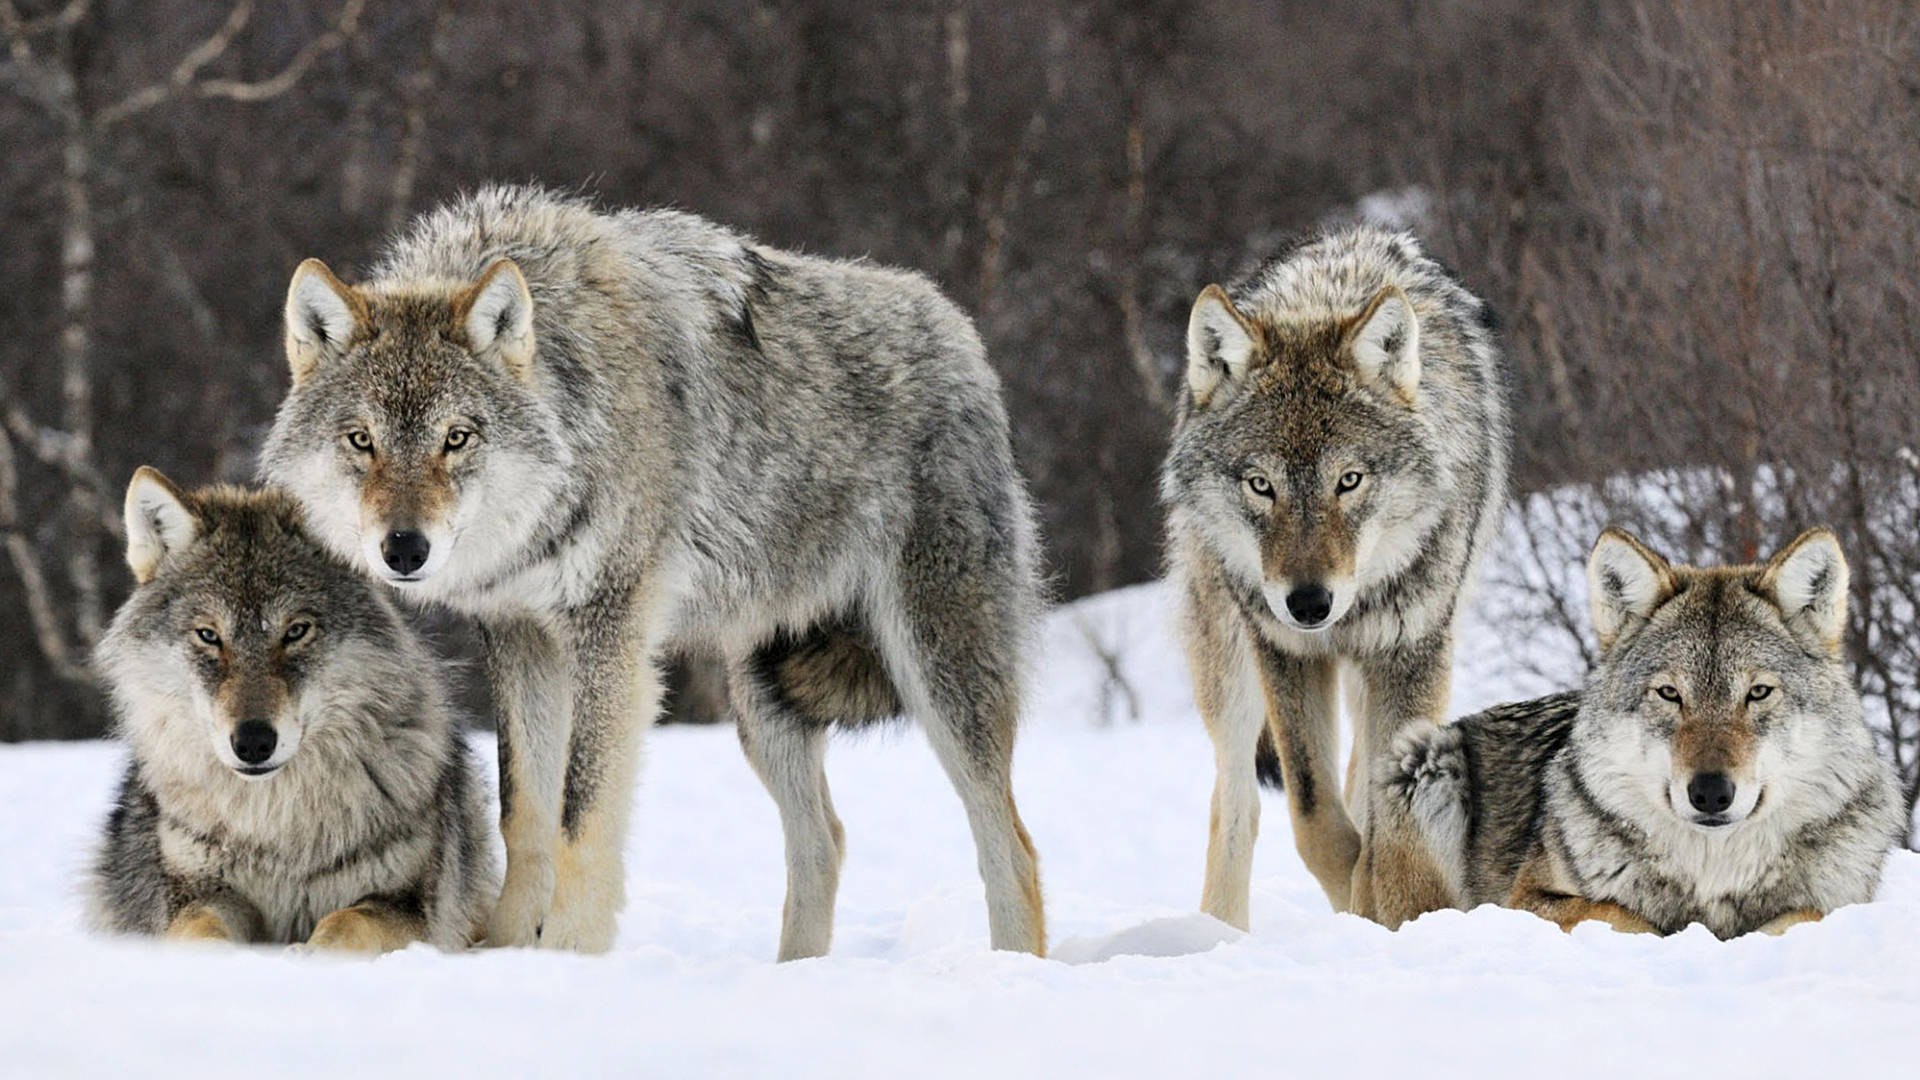 第16名,狼,它的声音为90分贝,当狼群同时嚎叫时,它们共同的音量可以